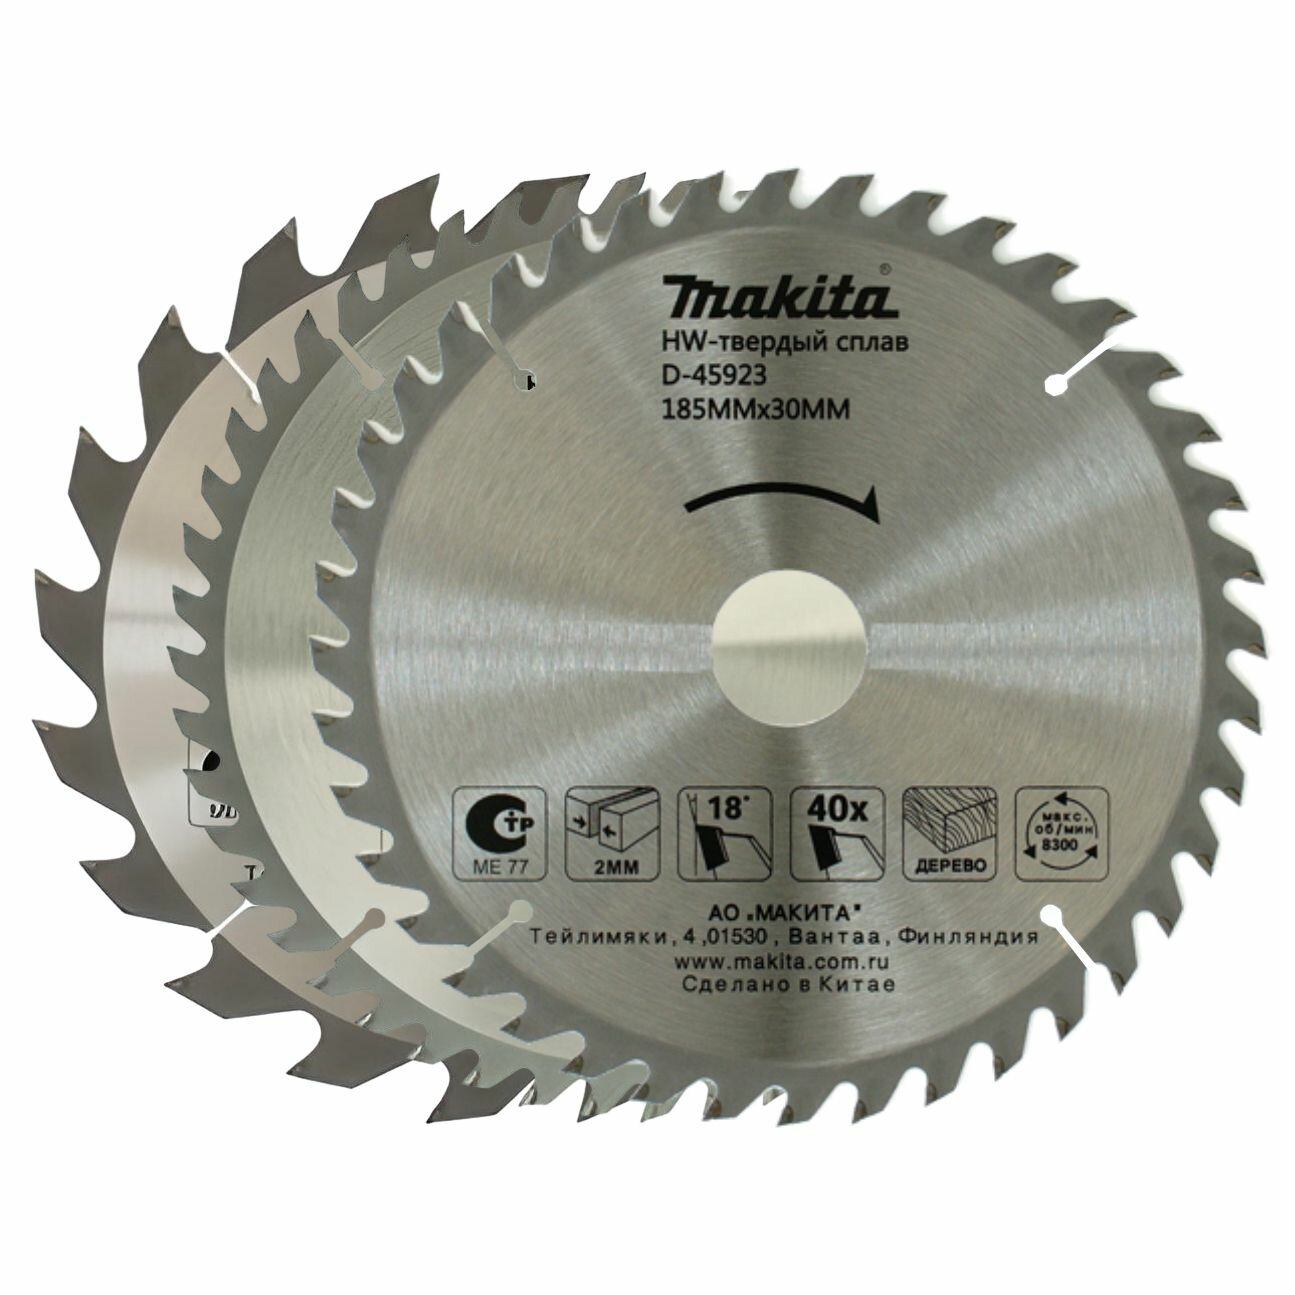 Пильный диск Makita по дереву, 185x30x2 мм, 3 шт, D-46349